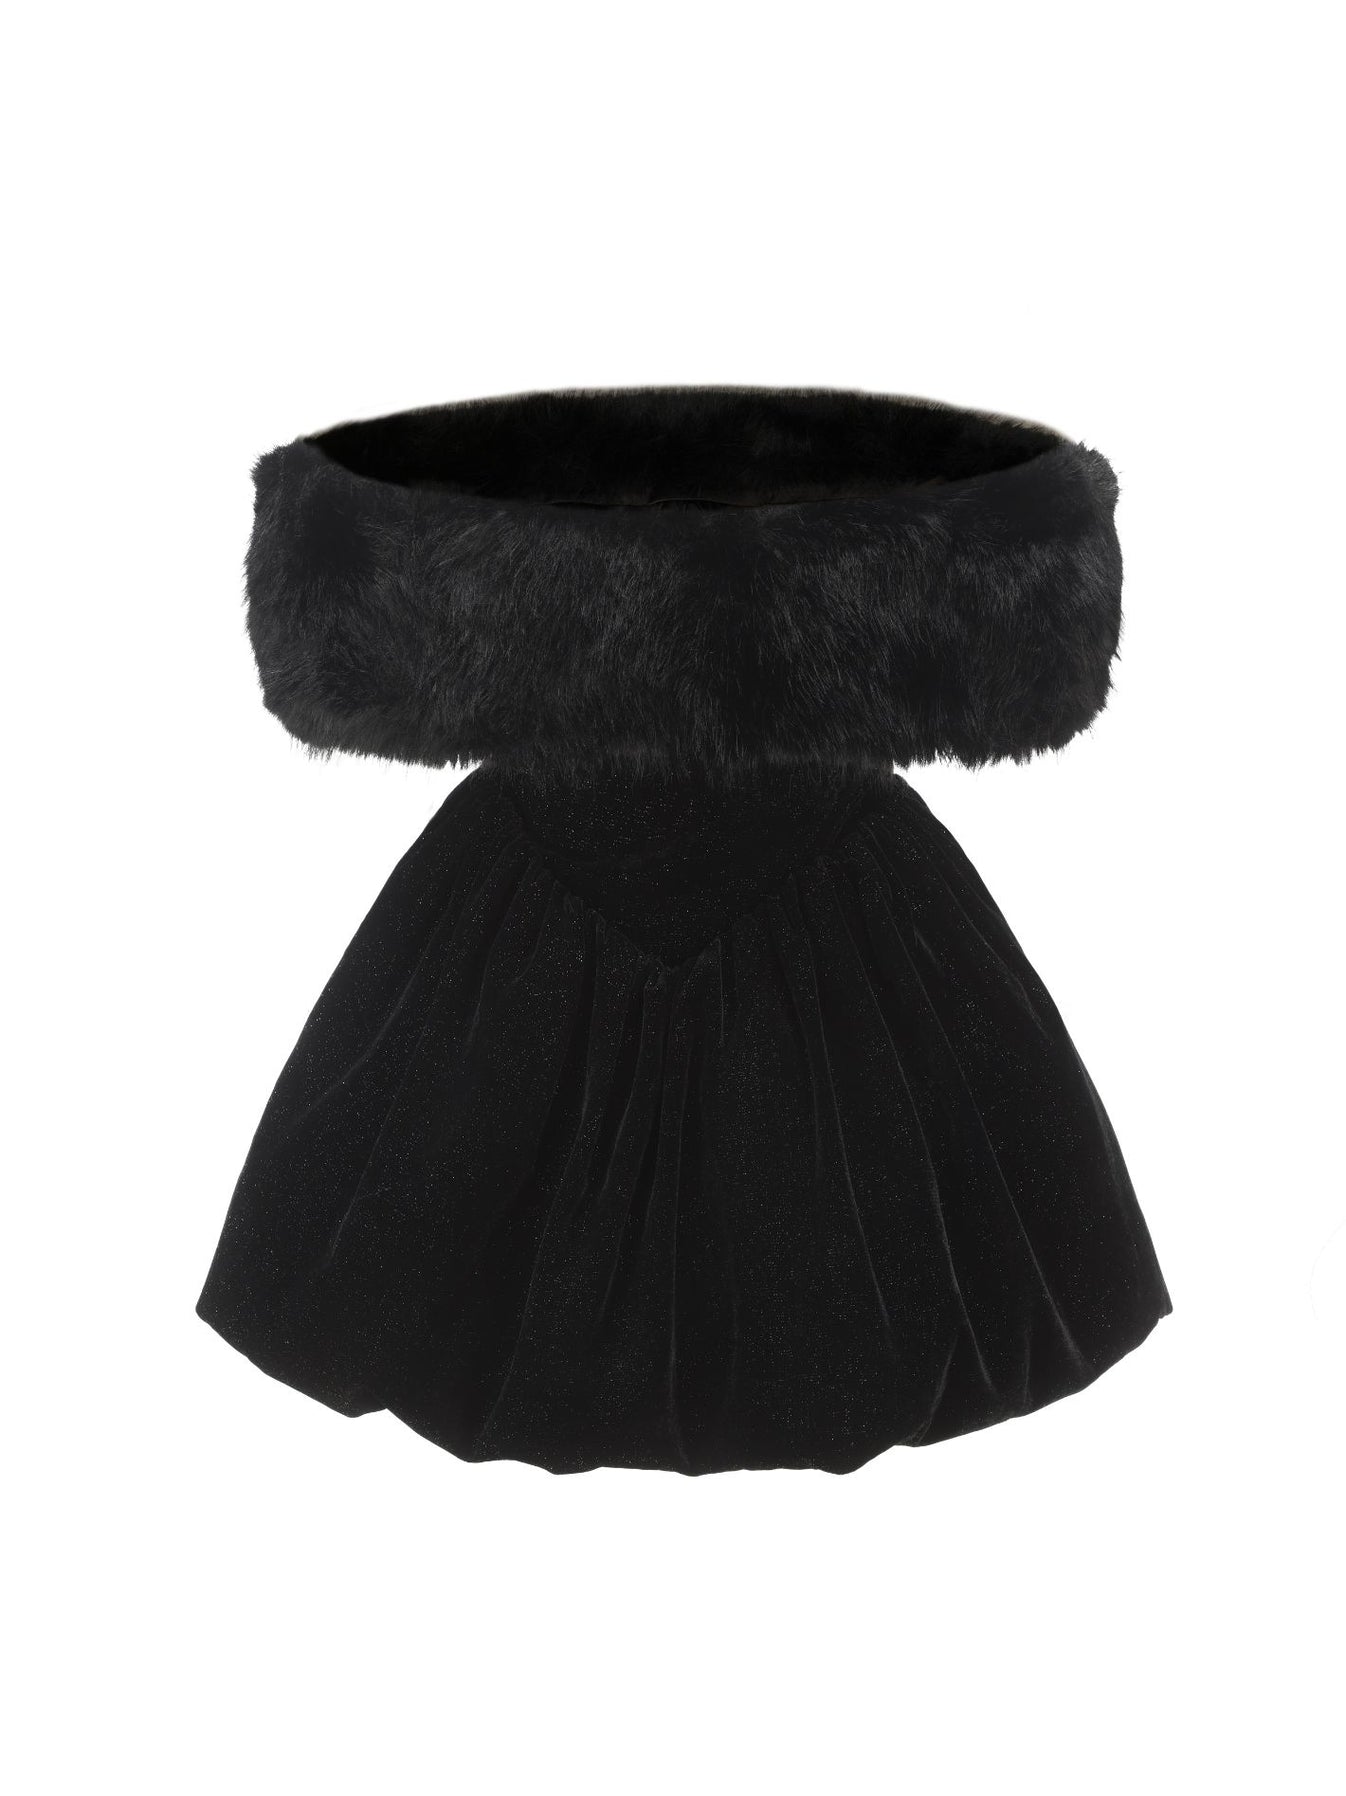 Candice Velvet Dress (Black) – Nana Jacqueline